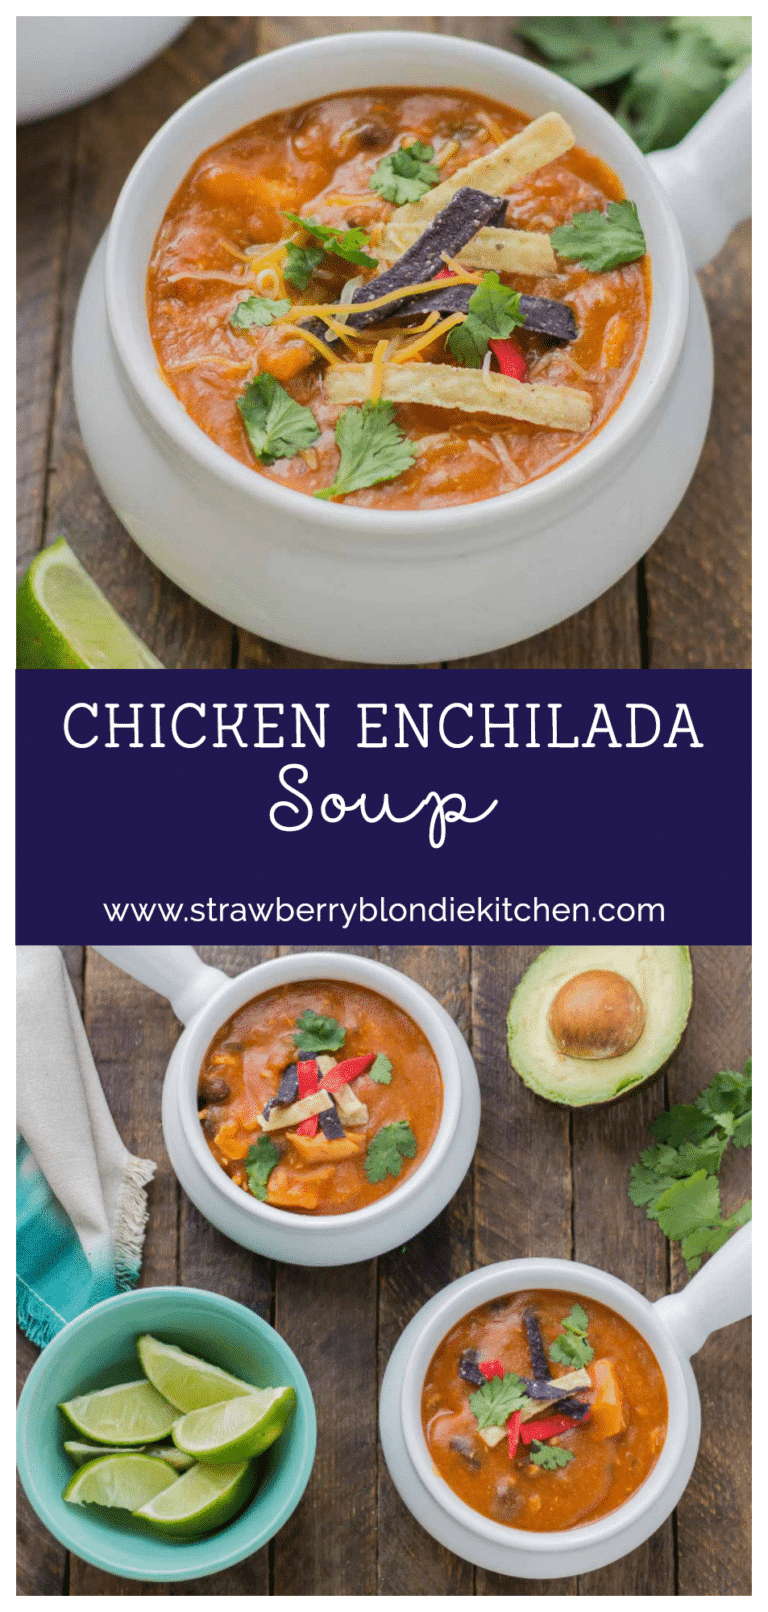 Chicken Enchilada Soup - Strawberry Blondie Kitchen